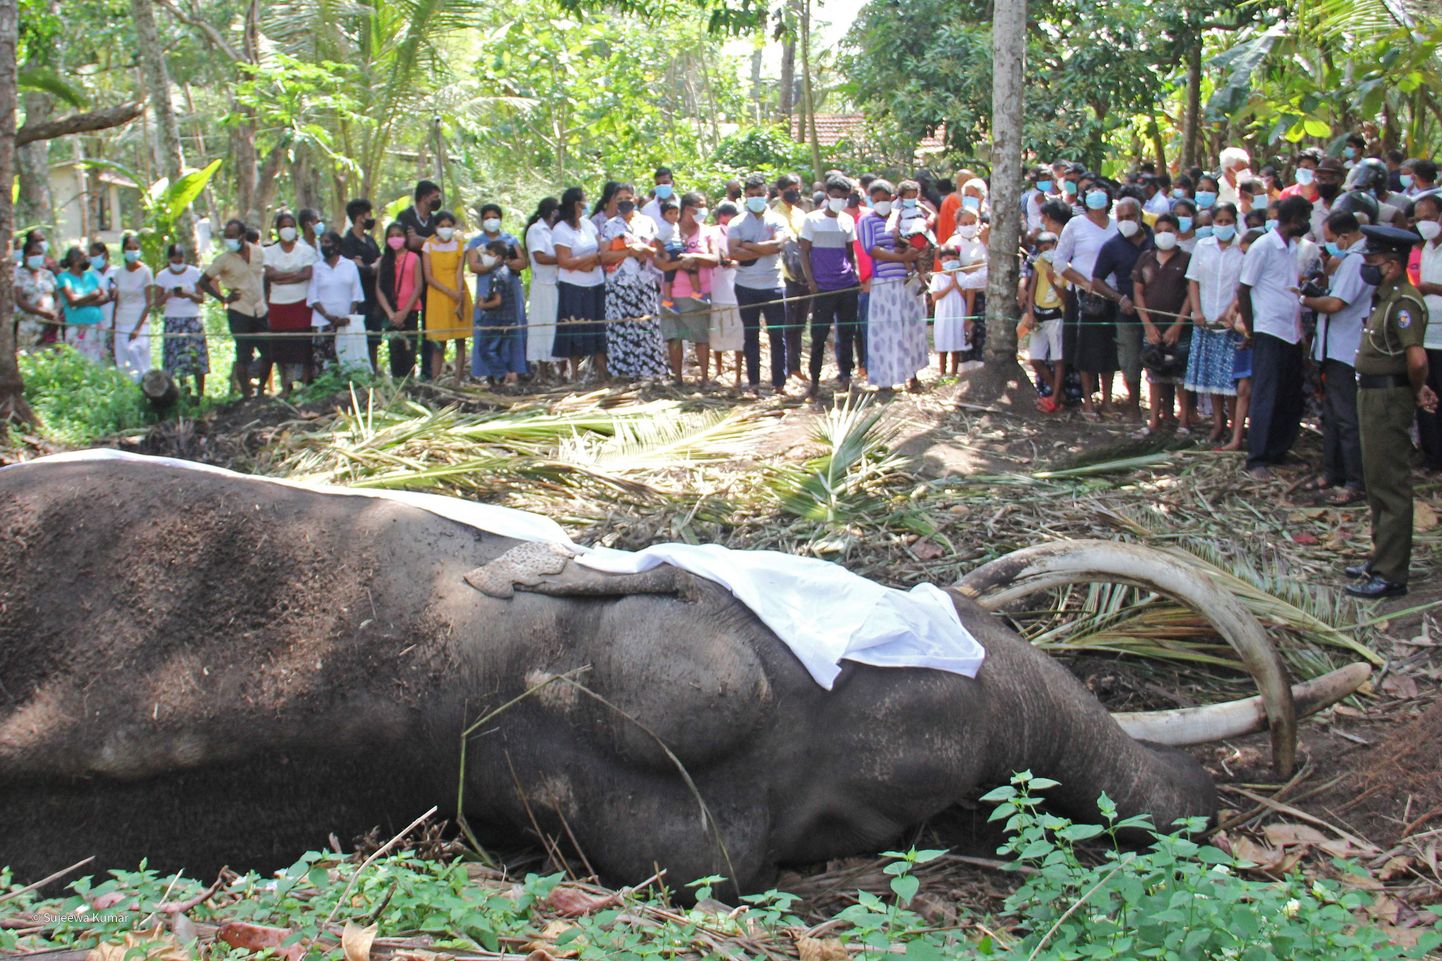 Inimesed leinamas 68-aastasena surnud Sri Lanka kõige pühamat elevanti.